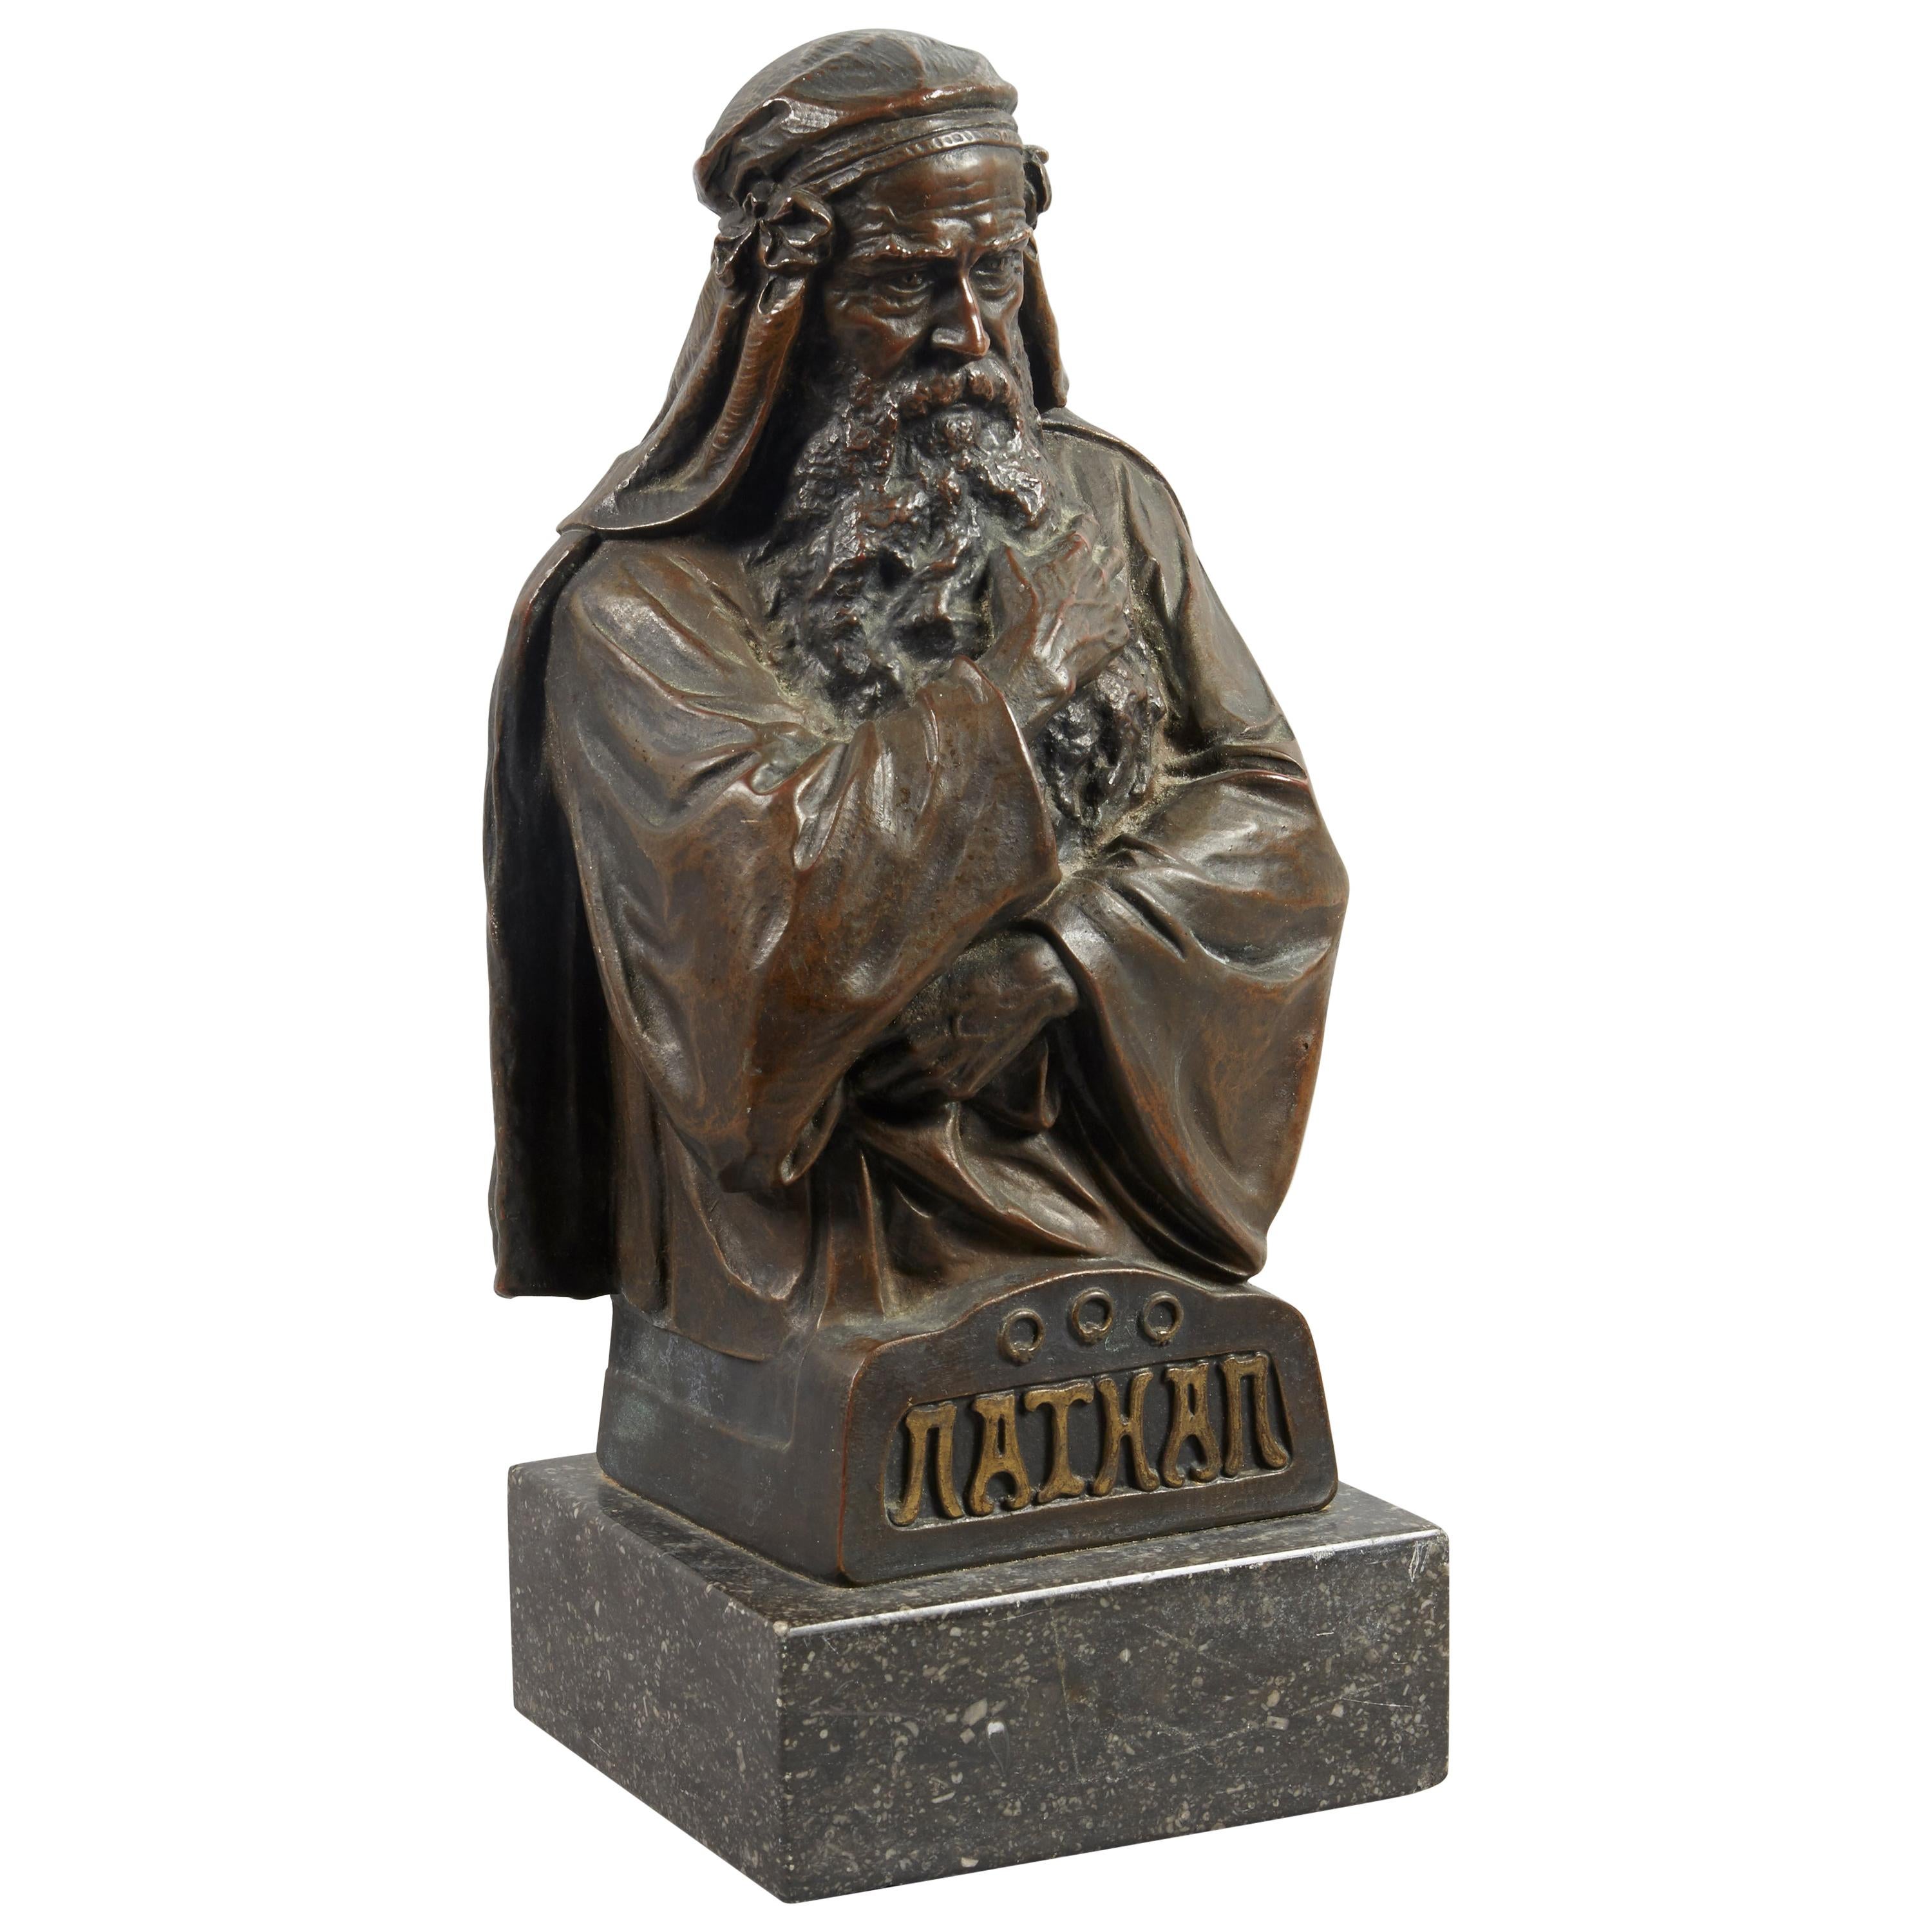 Nathan the Wise, österreichische Bronzeskulptur des 19. Jahrhunderts